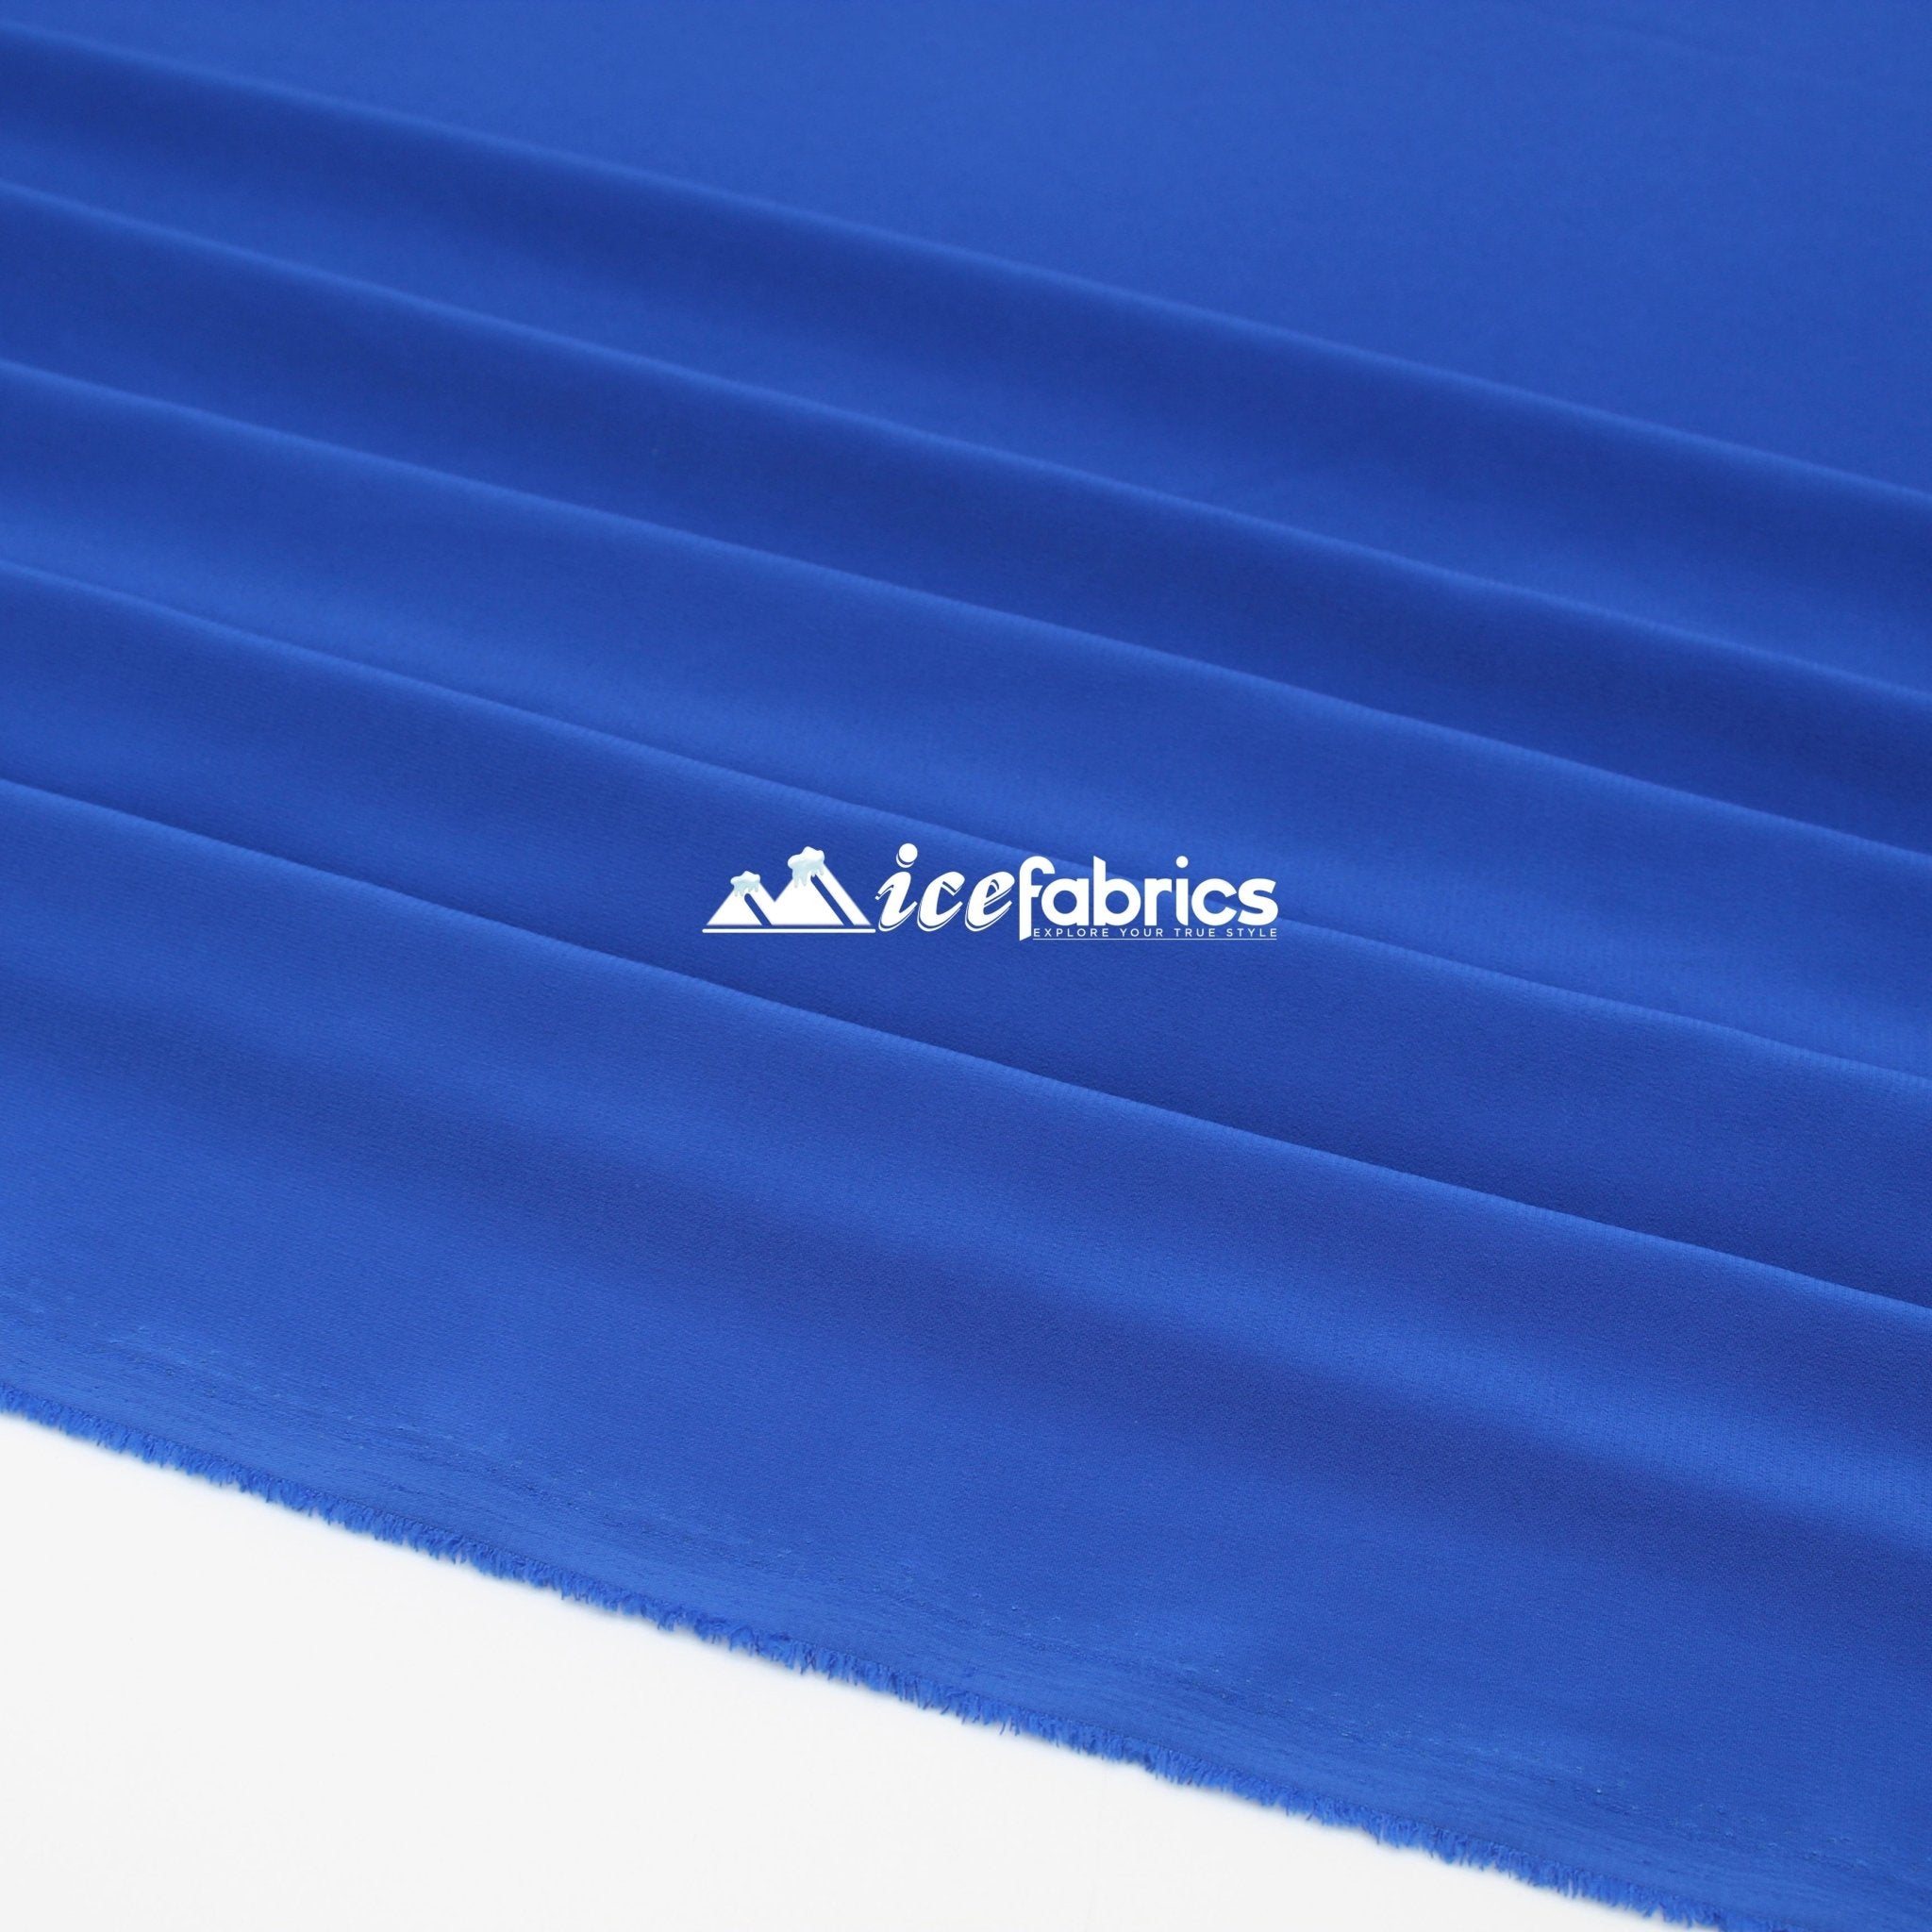 Silk Fabric Stretch Chiffon Fabric/ Spandex Fabric/ Royal BlueChiffon FabricICE FABRICSICE FABRICSRoyal BluePer YardSilk Fabric Stretch Chiffon Fabric/ Spandex Fabric/ Royal Blue ICE FABRICS